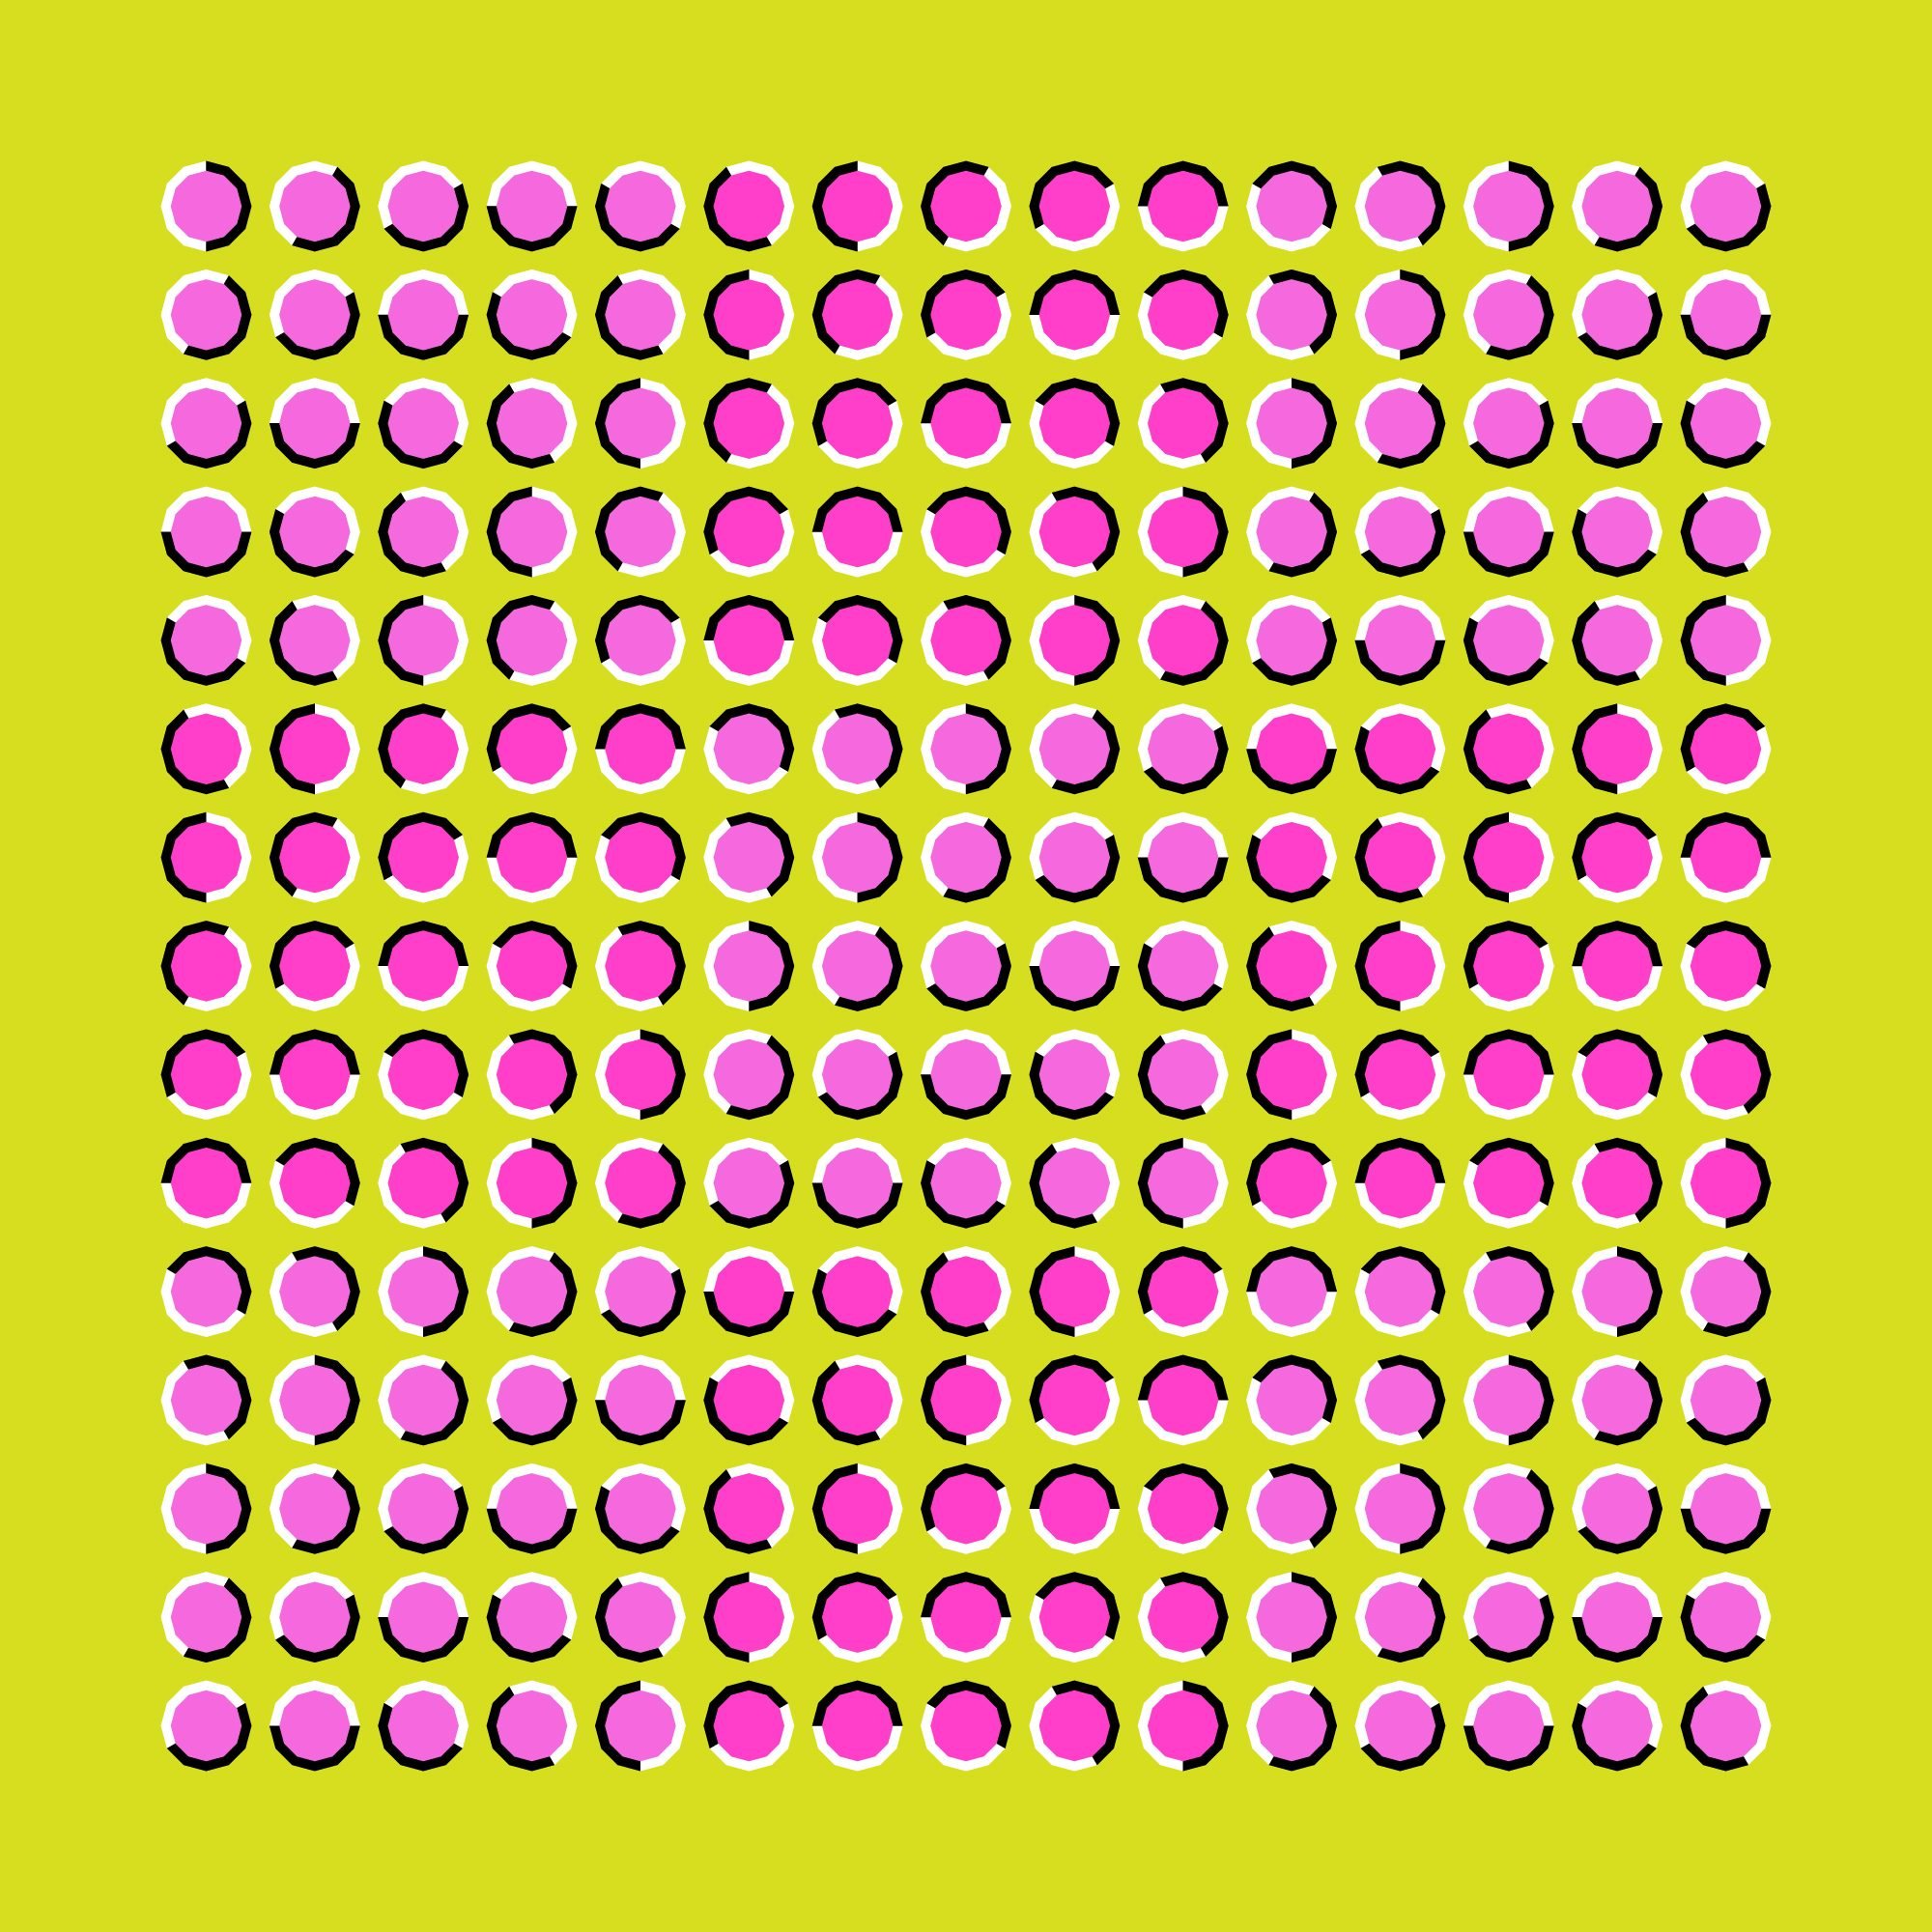 La ilusión óptica del movimiento ejecutada en forma de polígonos fluctuantes de color rosa y lila.